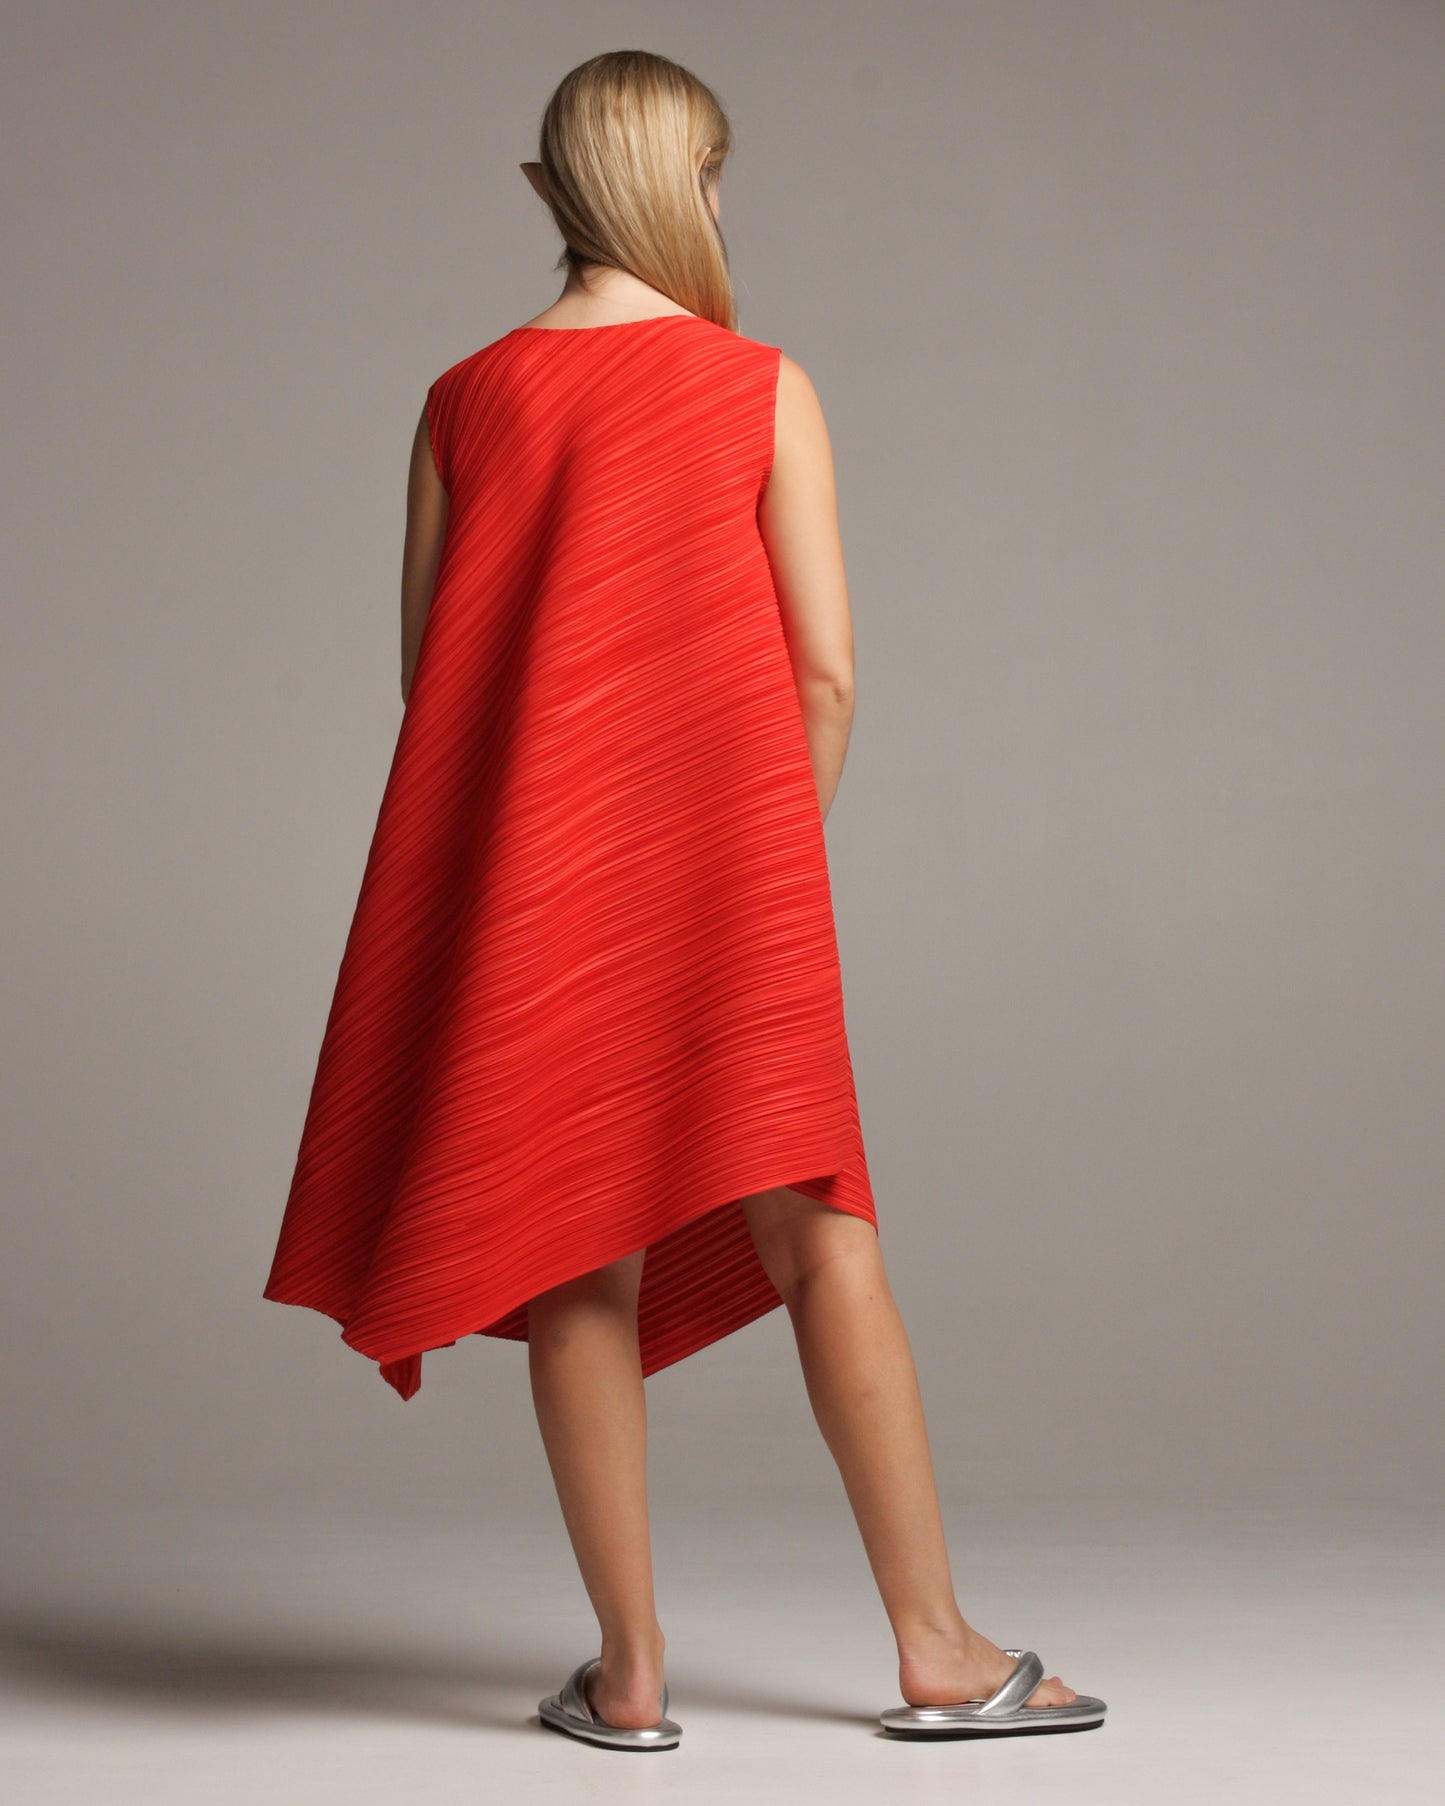 Warped Crimson Red Dress